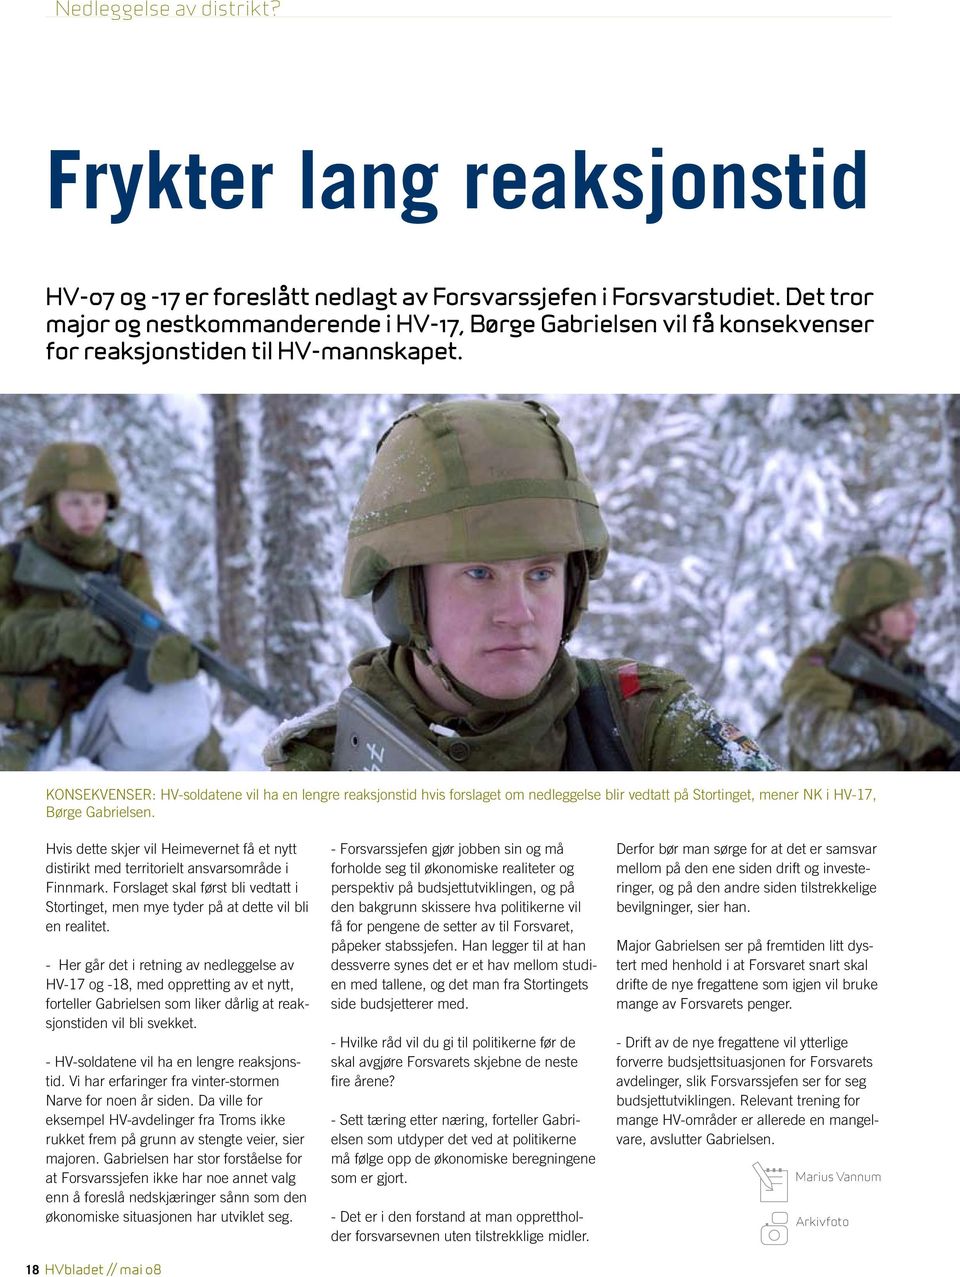 Konsekvenser: HV-soldatene vil ha en lengre reaksjonstid hvis forslaget om nedleggelse blir vedtatt på Stortinget, mener NK i HV-17, Børge Gabrielsen.